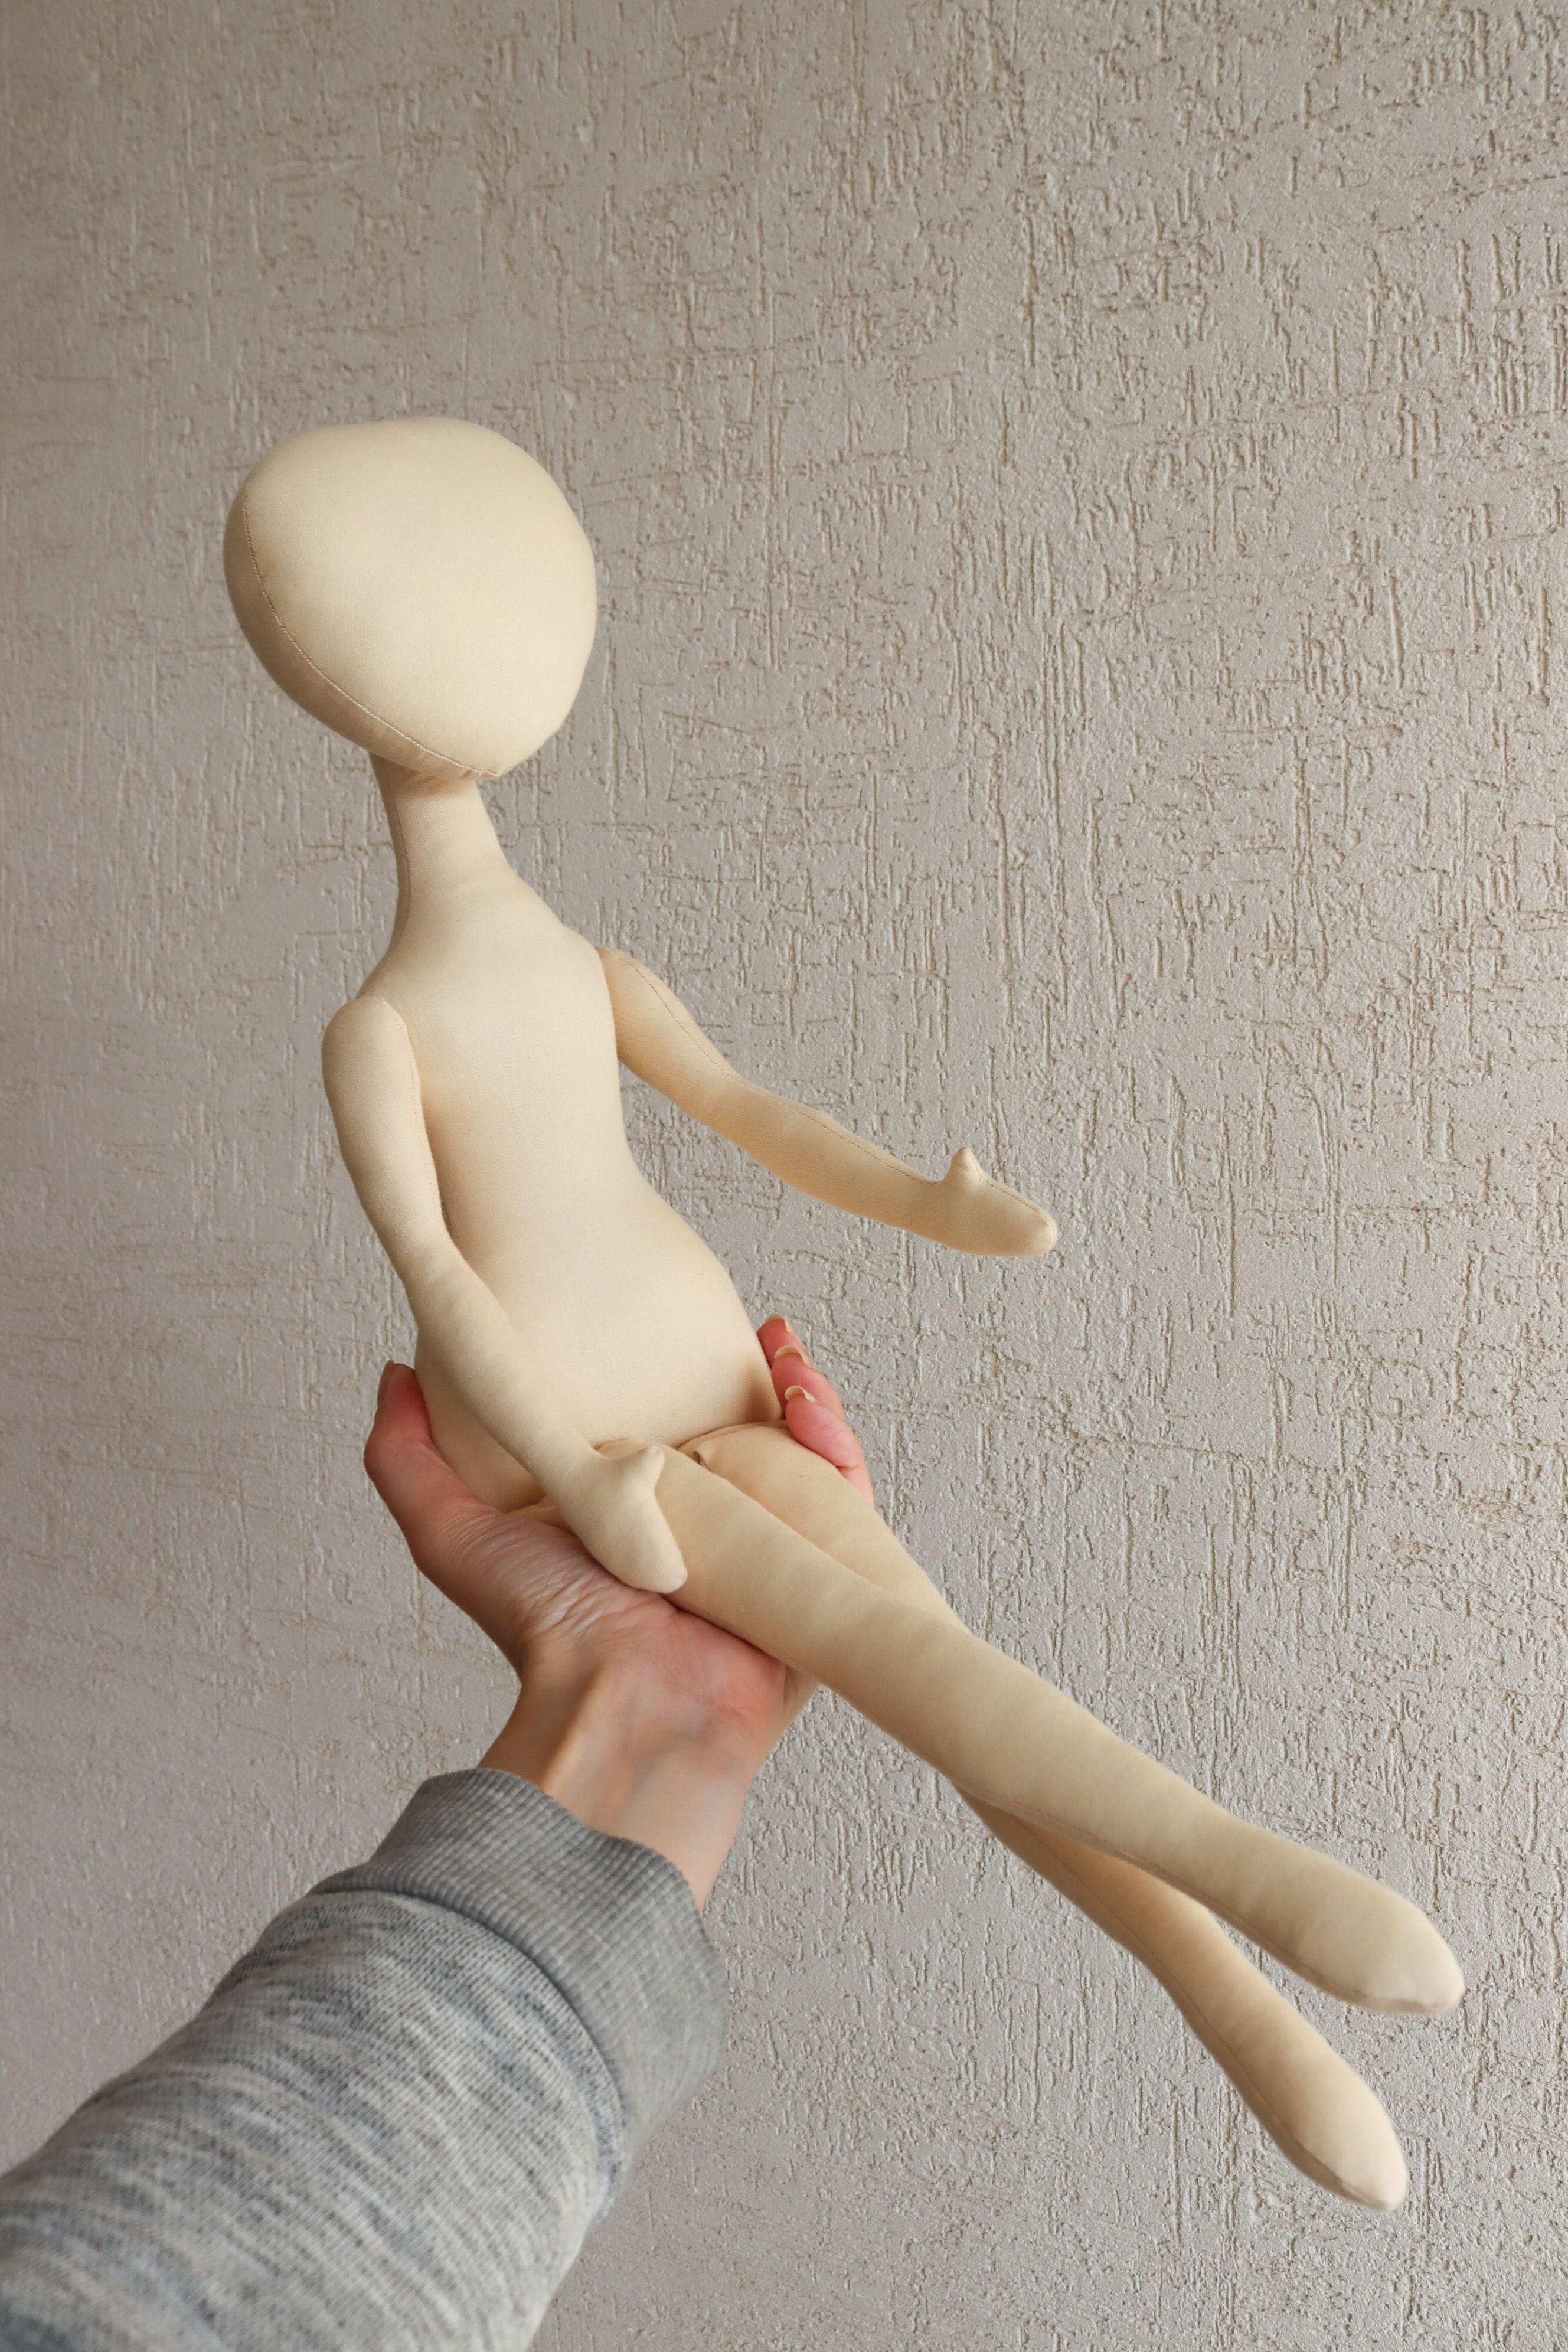 Бумажная выкройка тела интерьерной куклы из текстиля. Модель Этель, рост 40 см